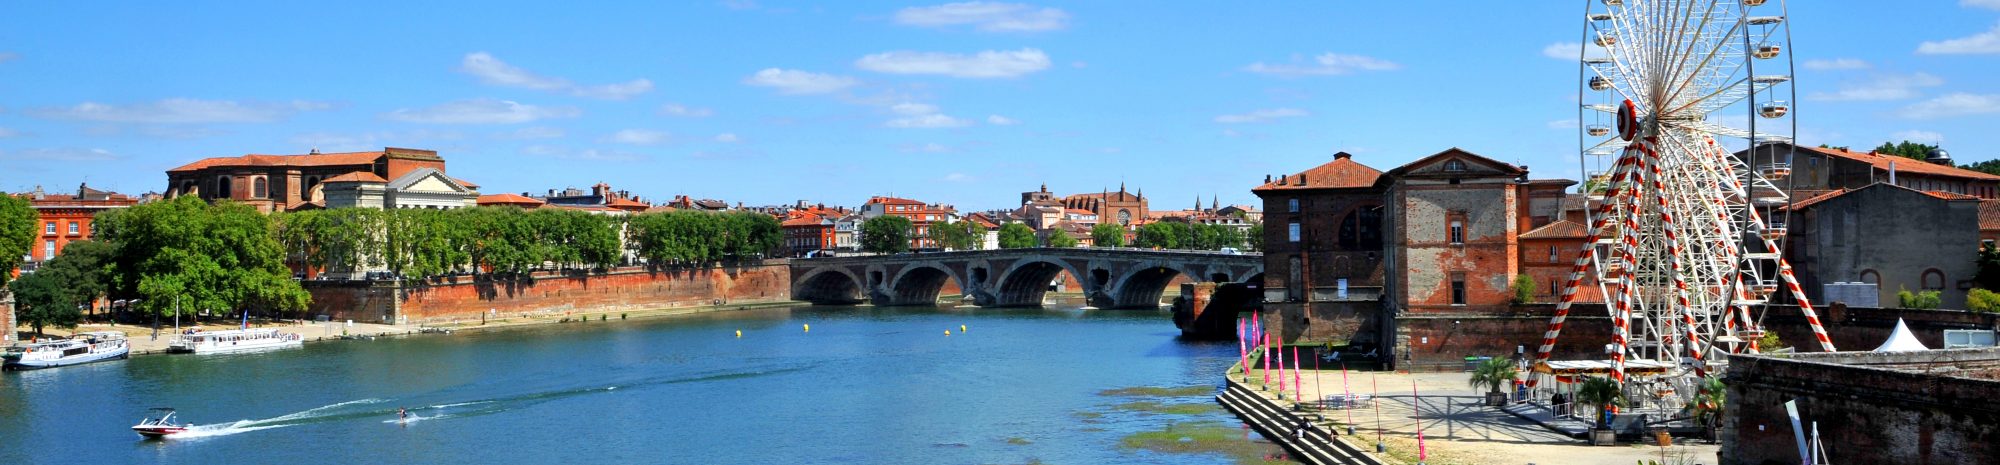 Les 10 raisons de visiter Toulouse